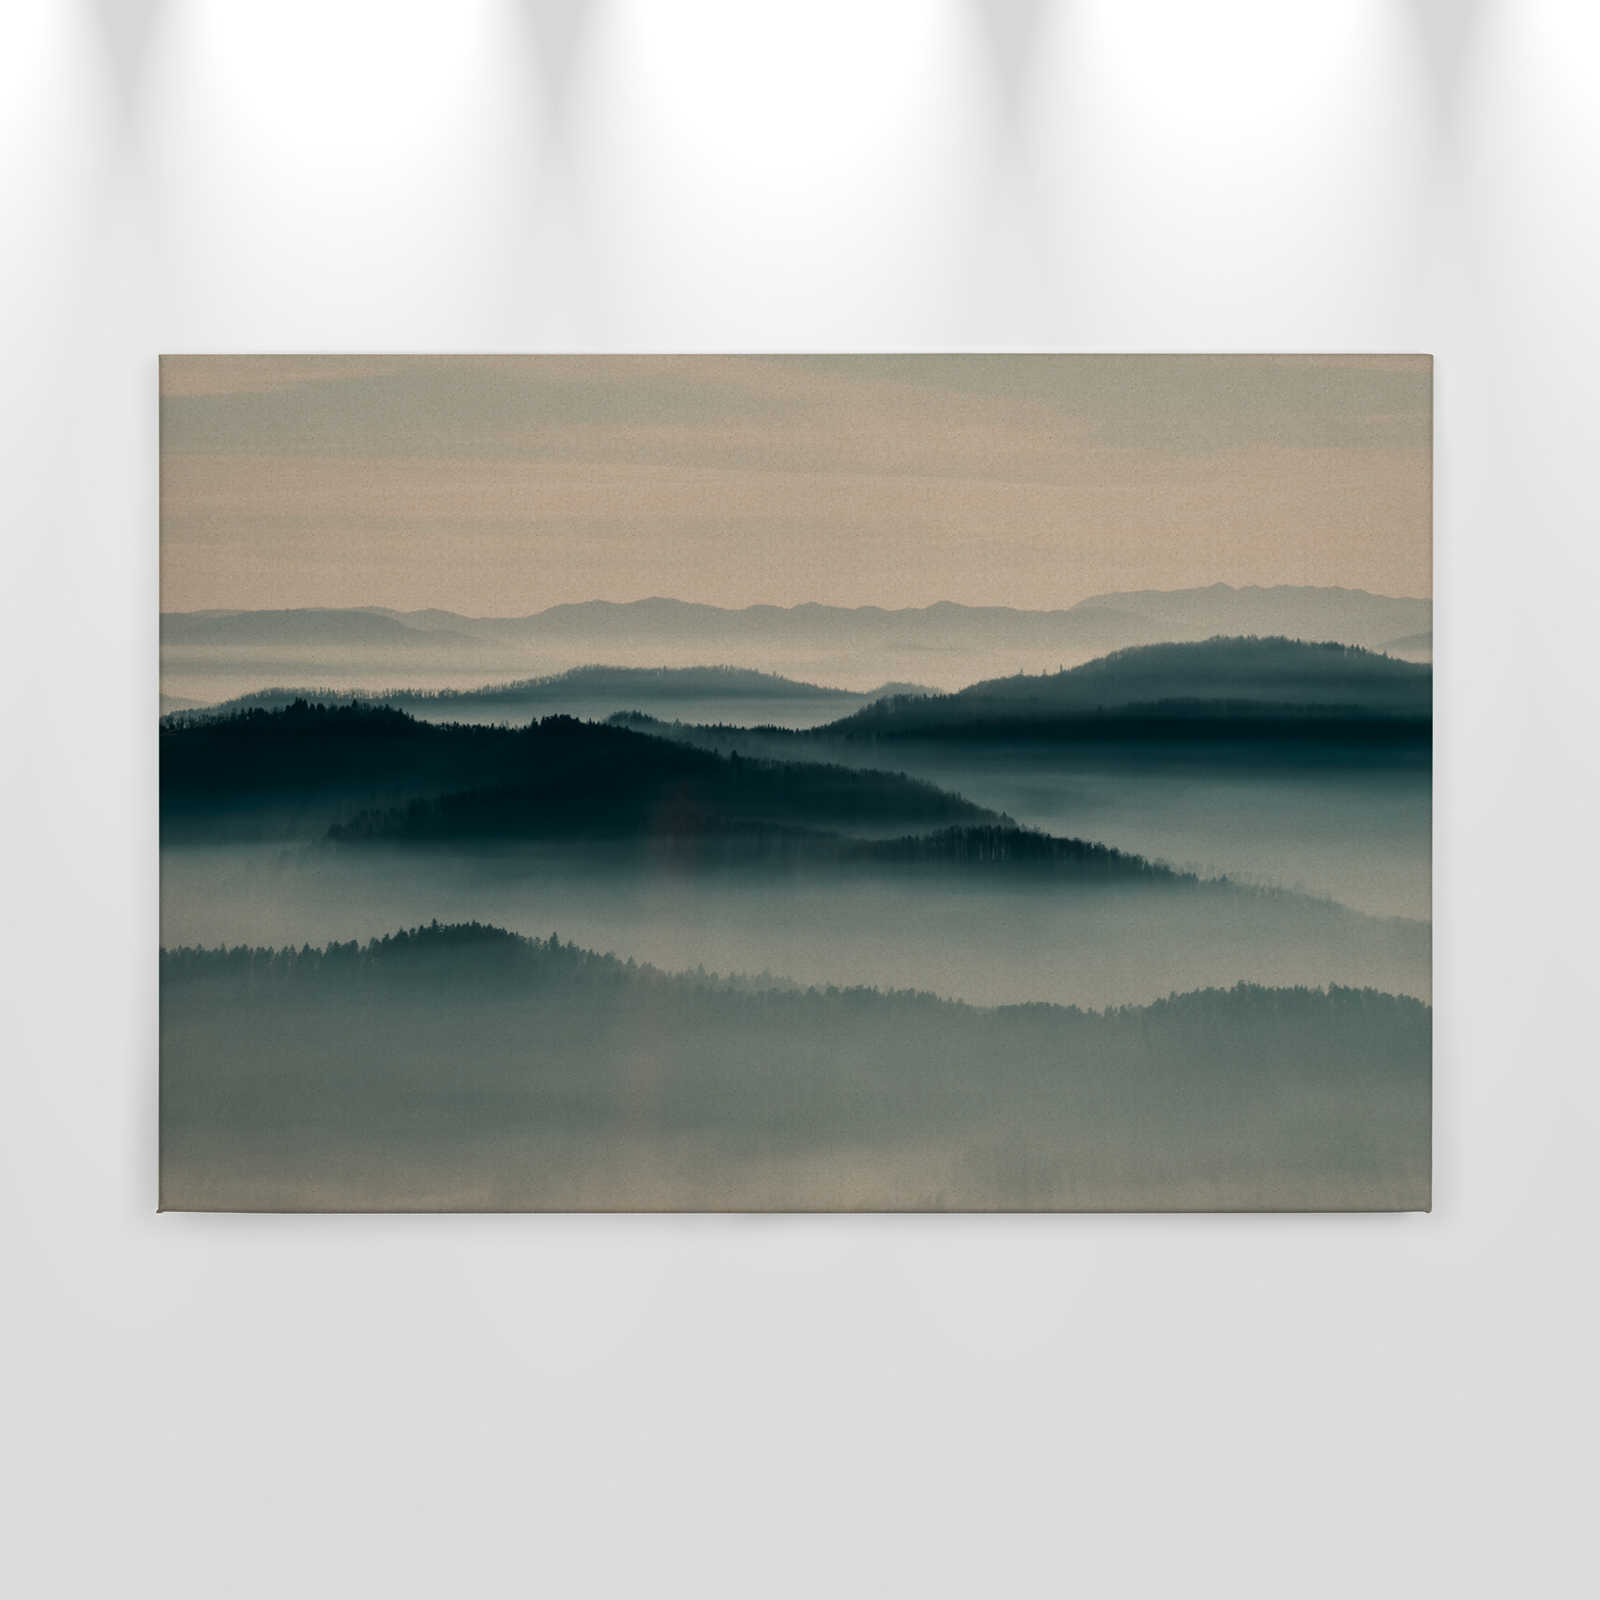             Horizon 1 - Toile avec paysage de brume, nature Sky Line en structure de carton - 0,90 m x 0,60 m
        